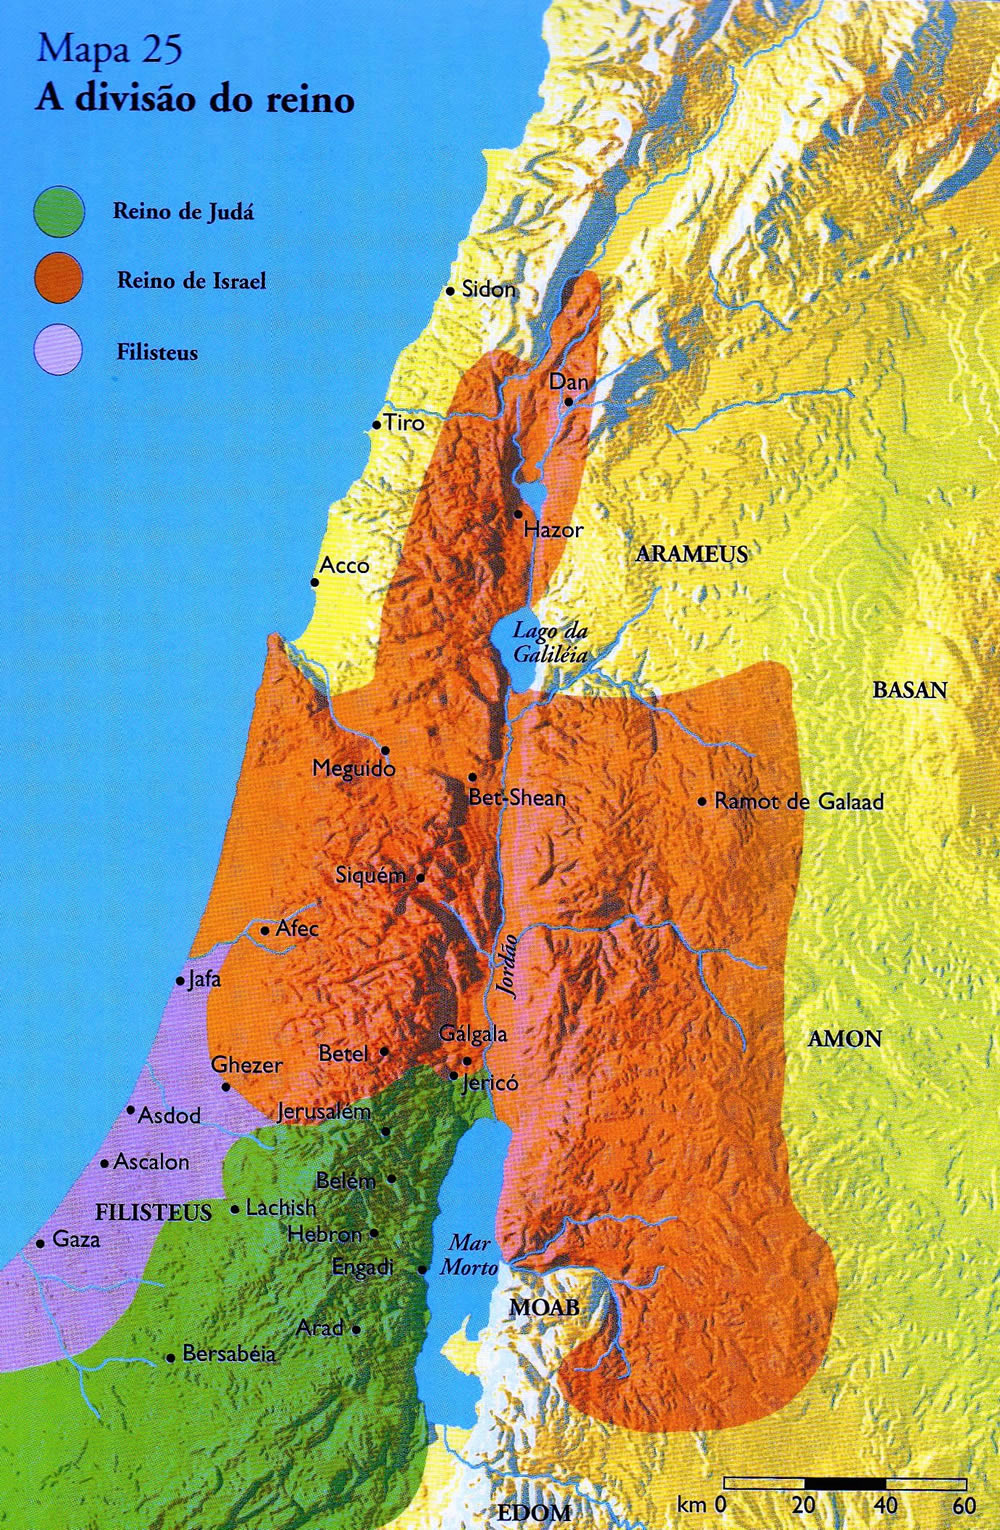 mapa reino israel e juda